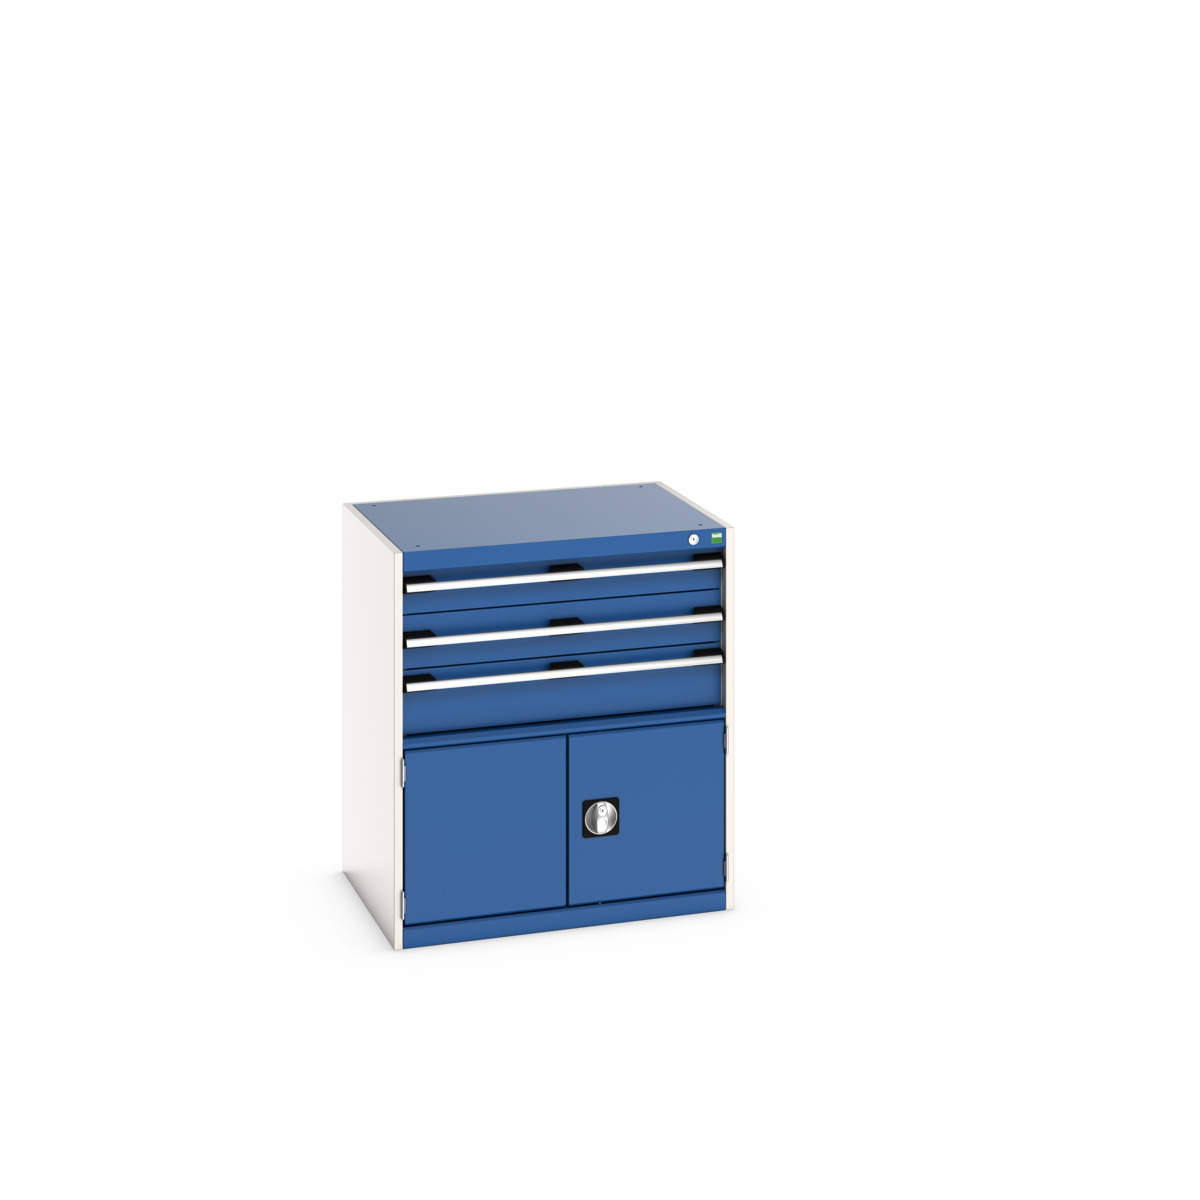 40020033.11V - cubio drawer-door cabinet